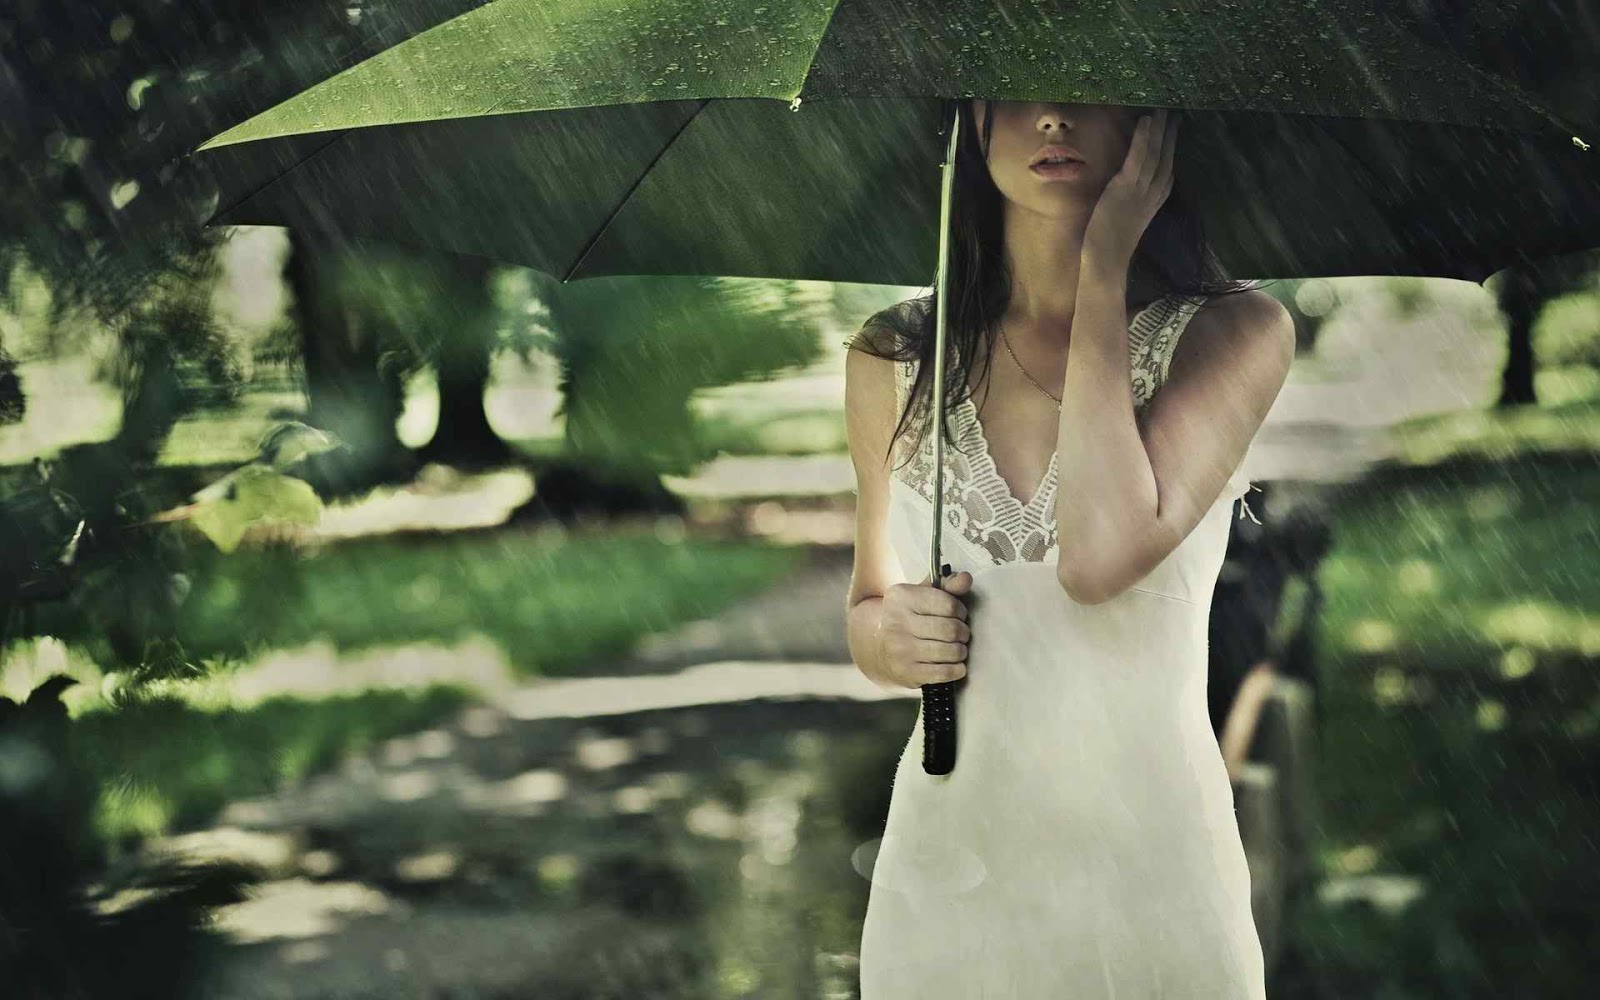 Girl On Rain Facebook Profile Picture - Umbrella Girl In The Rain - HD Wallpaper 